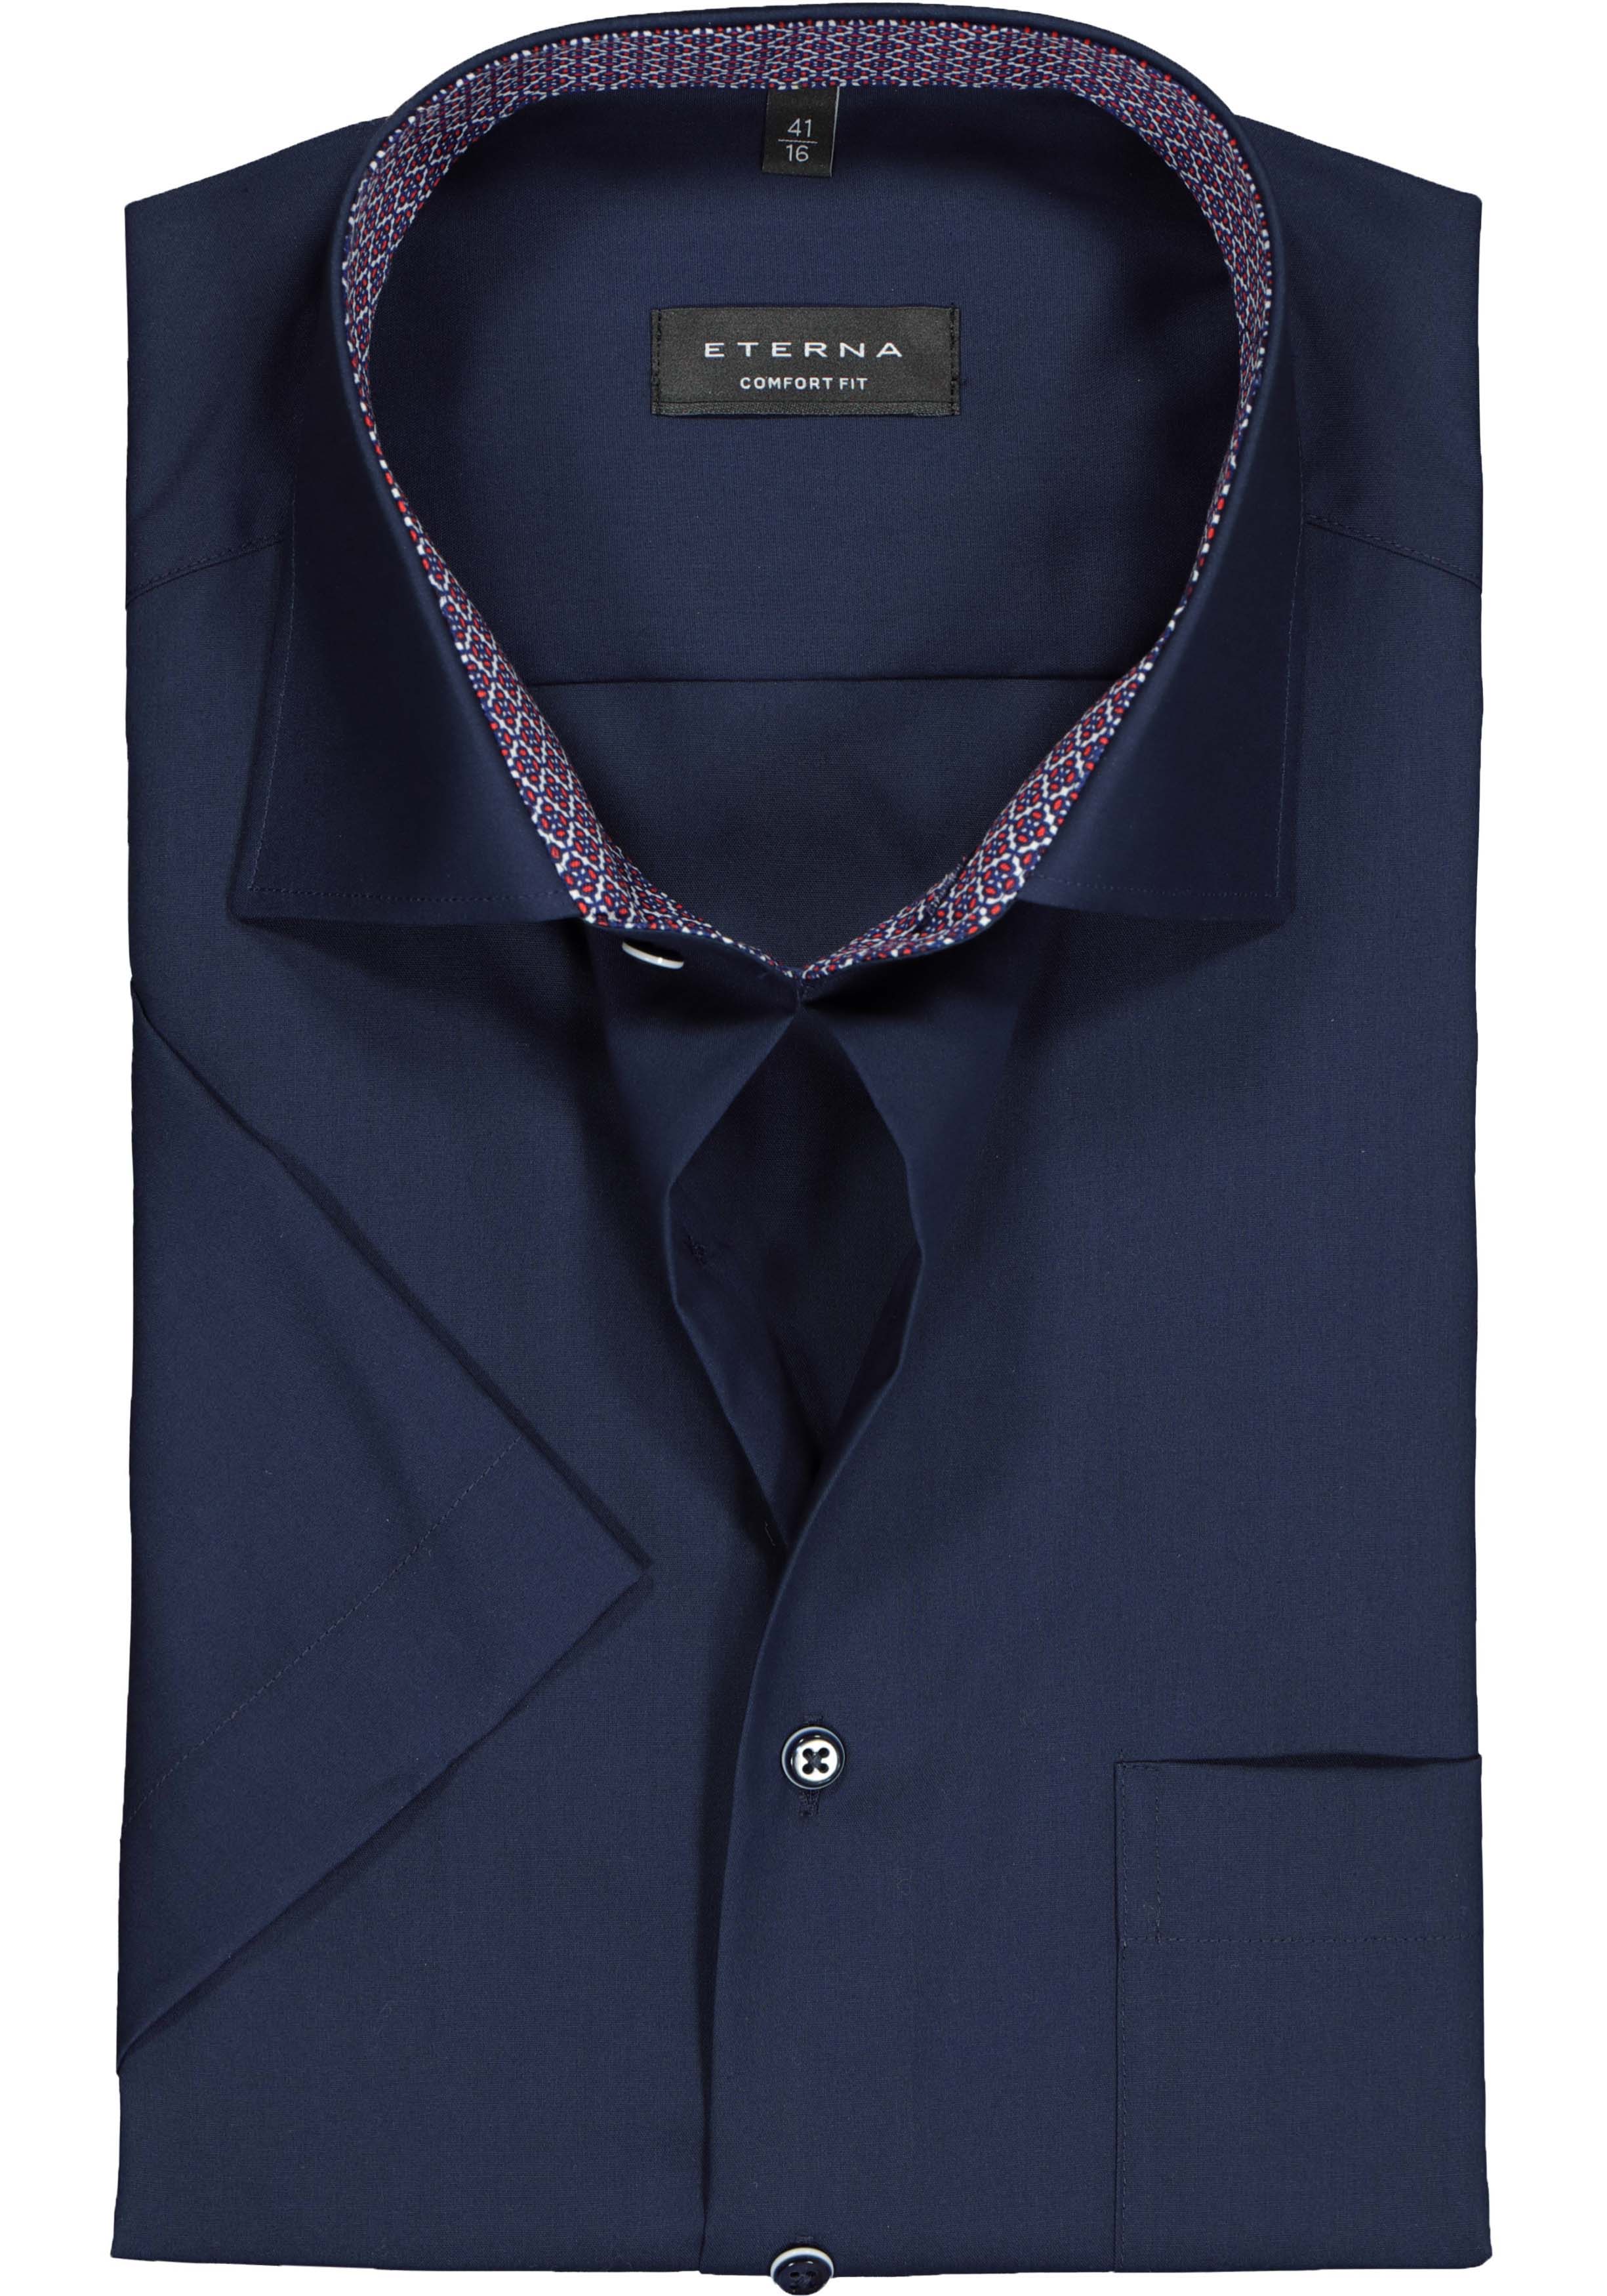 ETERNA comfort fit overhemd korte mouw, Oxford, donkerblauw (contrast)